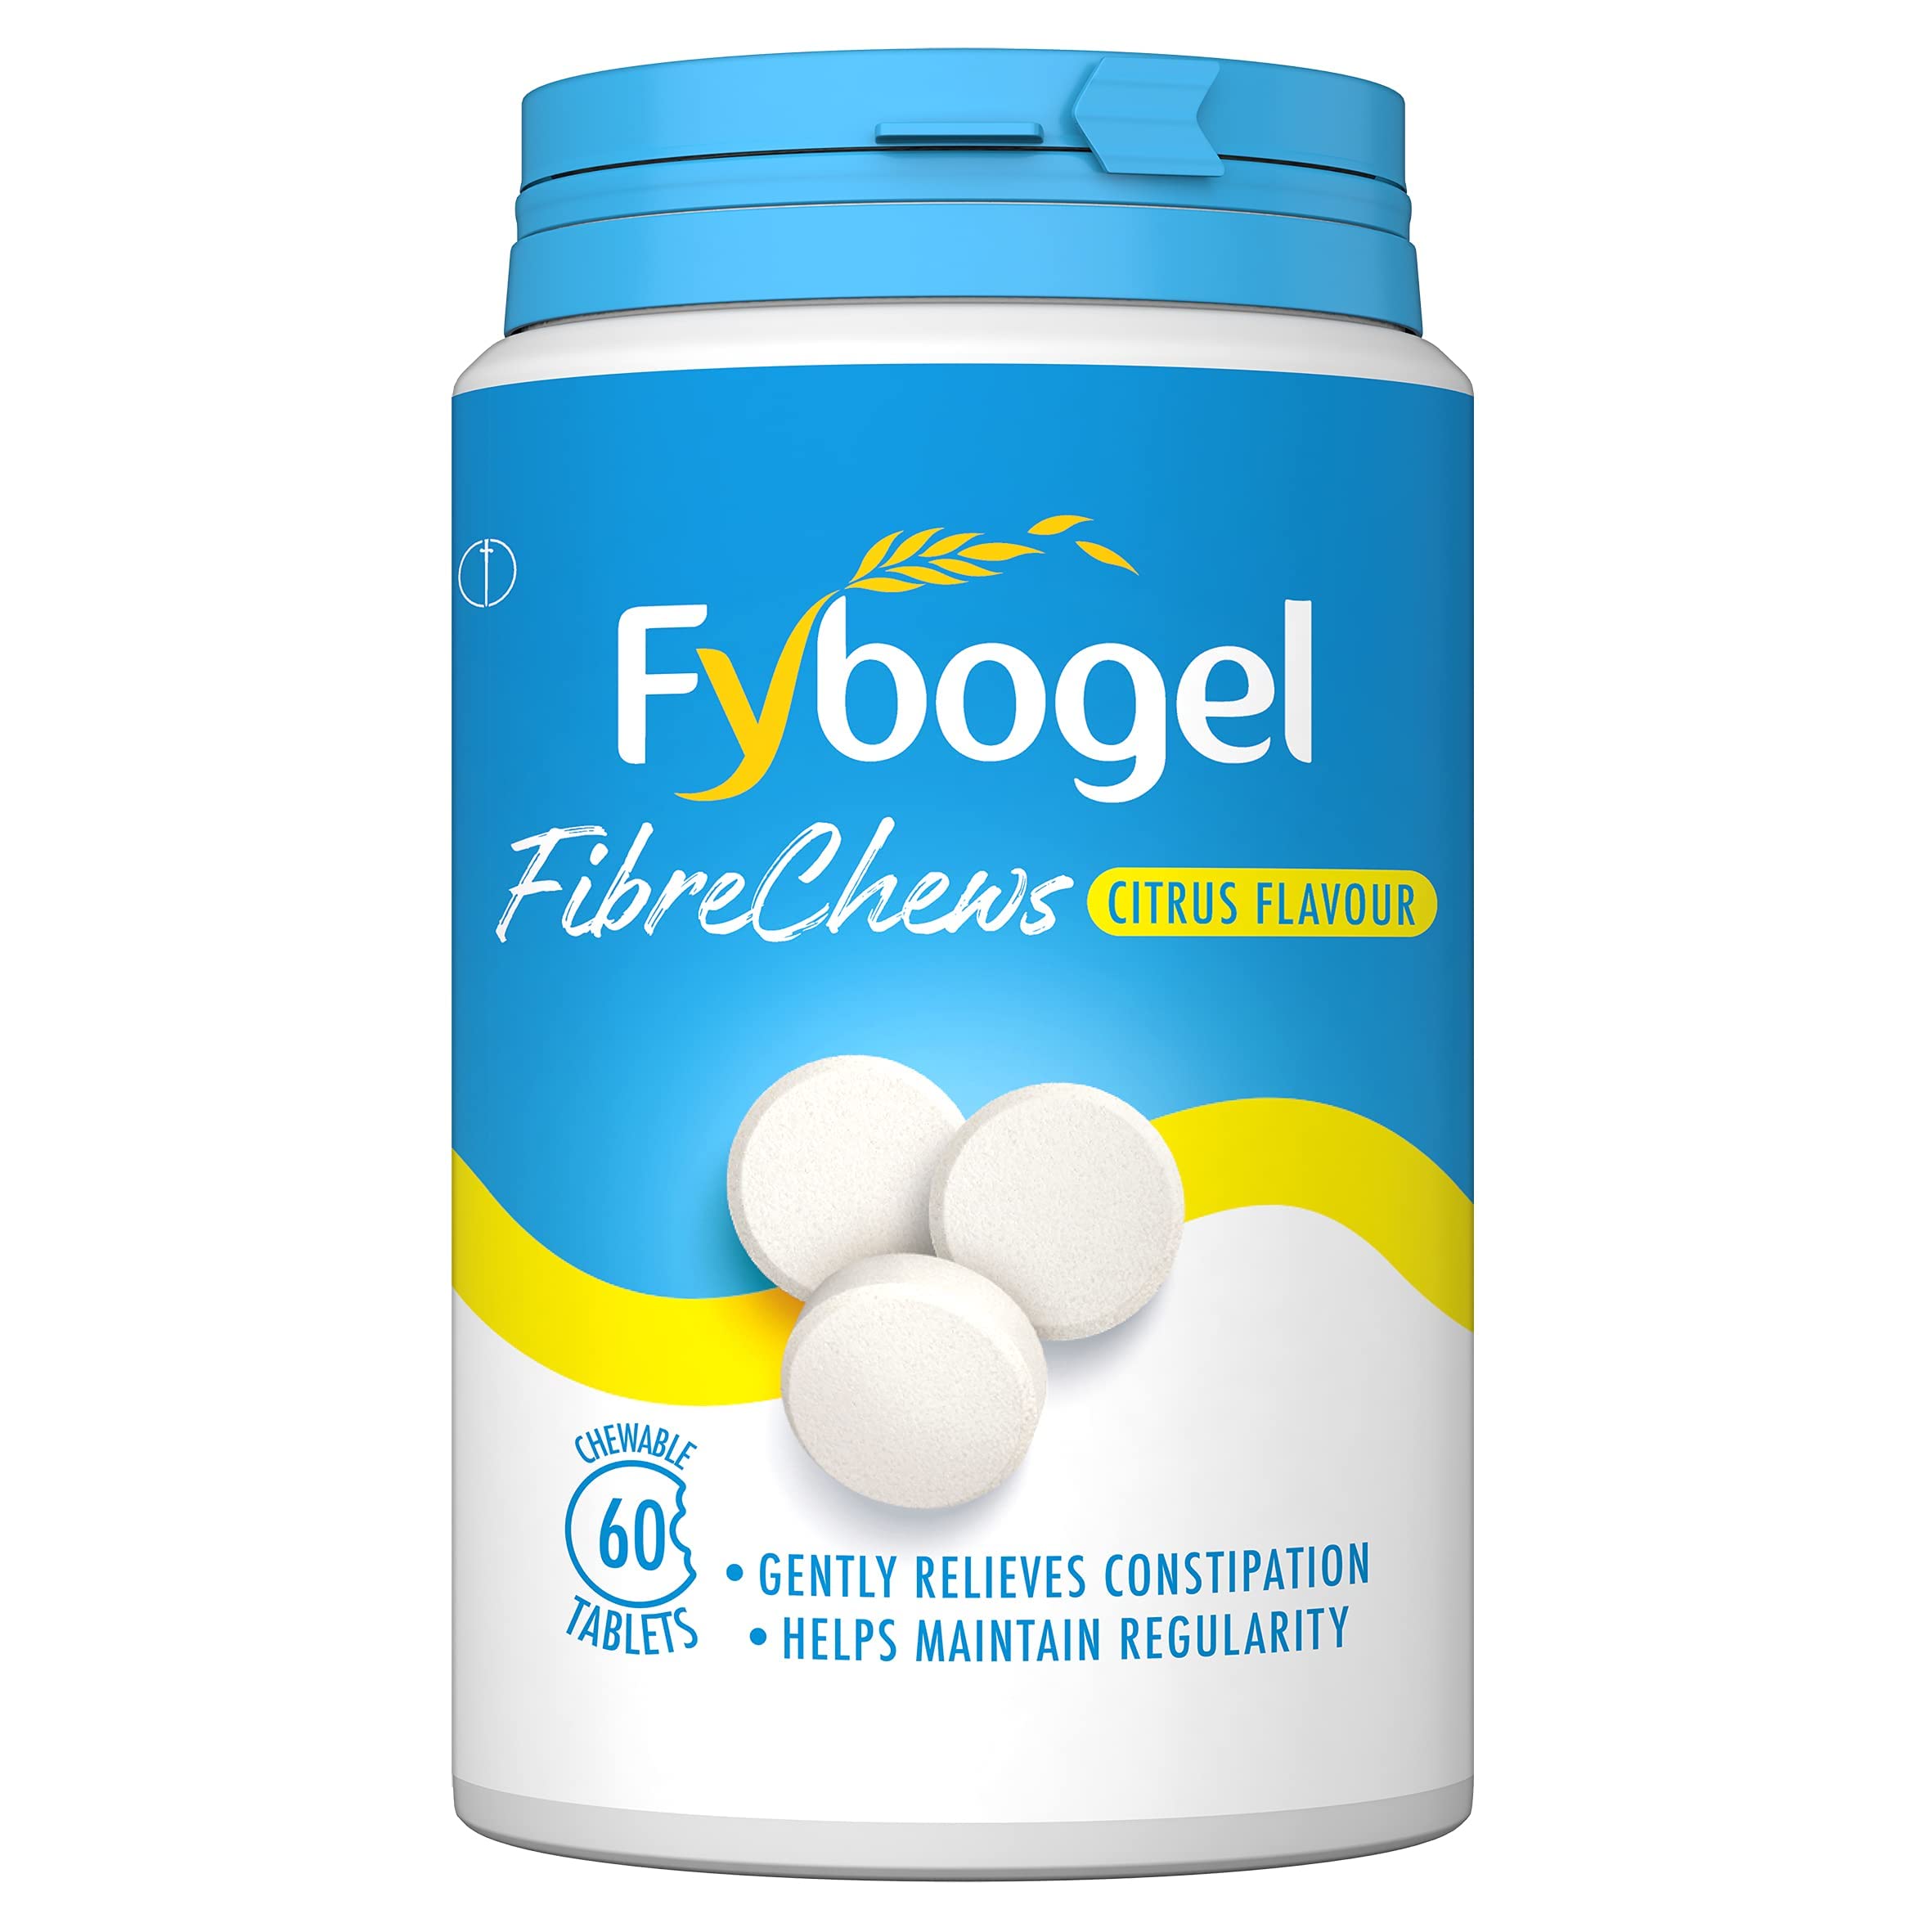 Fybogel Fibre Chews, Citrus Flavour, 60 Tablets